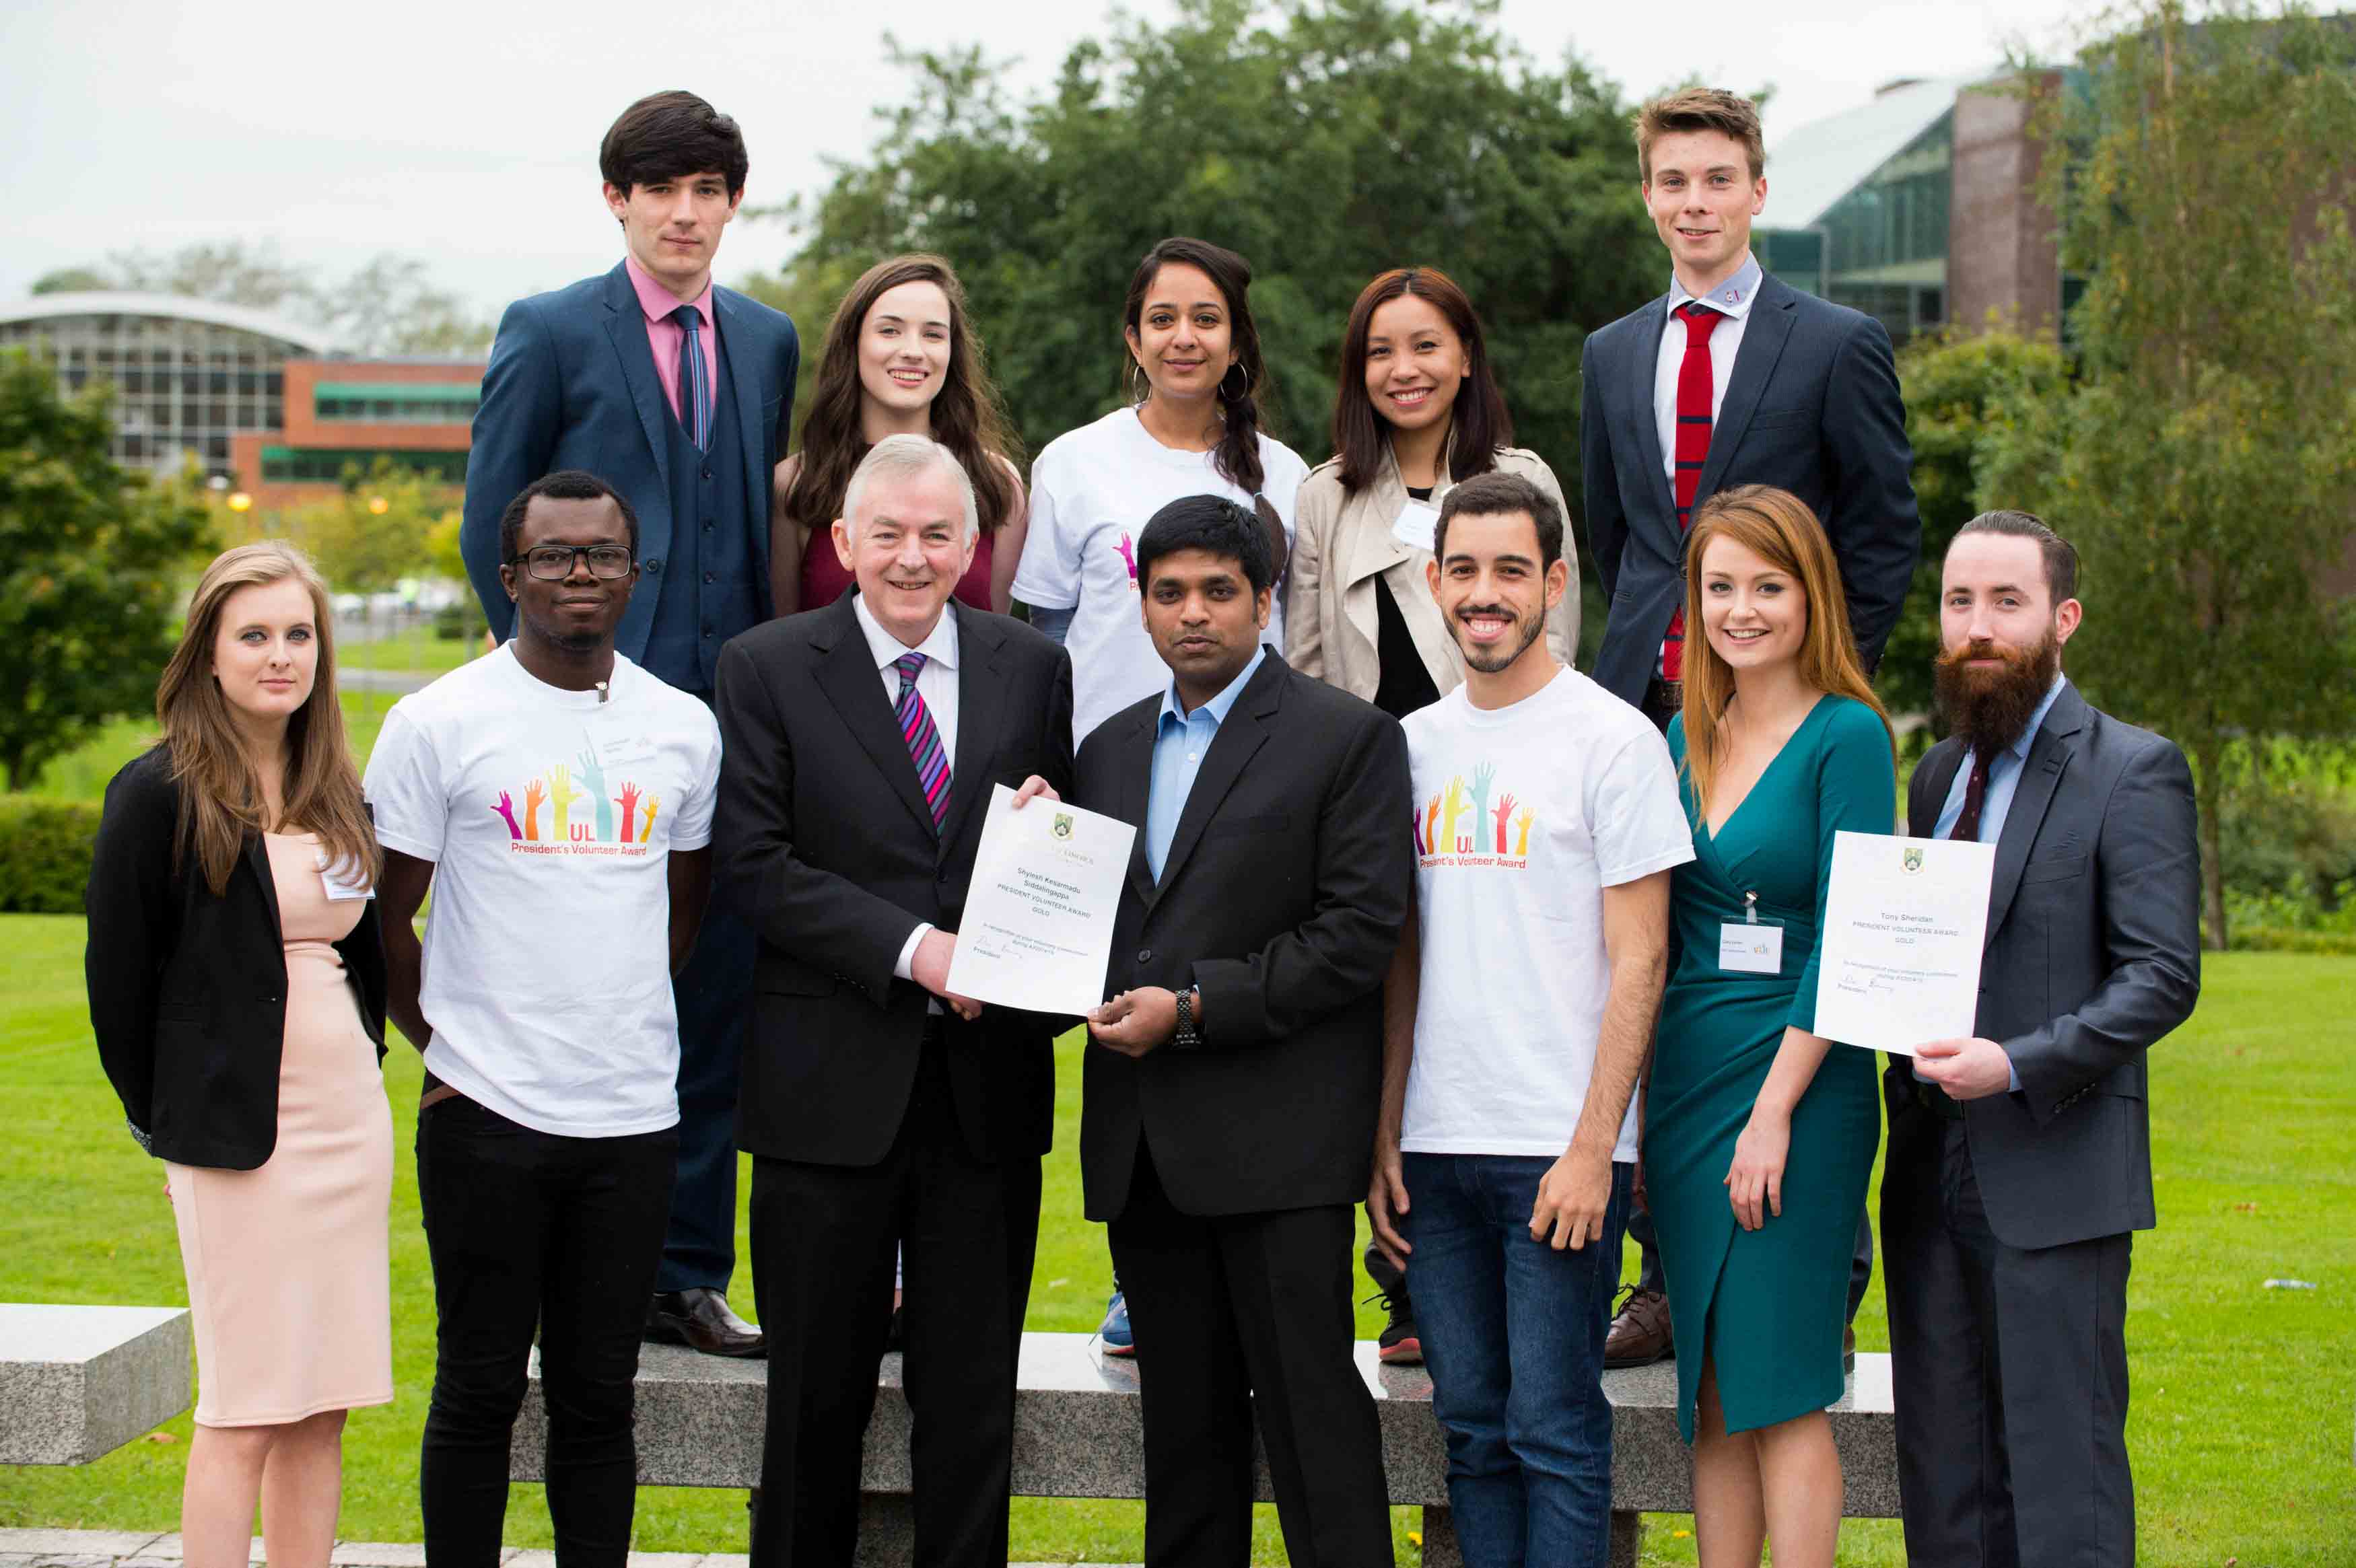 UL Honours Student Volunteers as over 40,000 hours of volunteering is reached